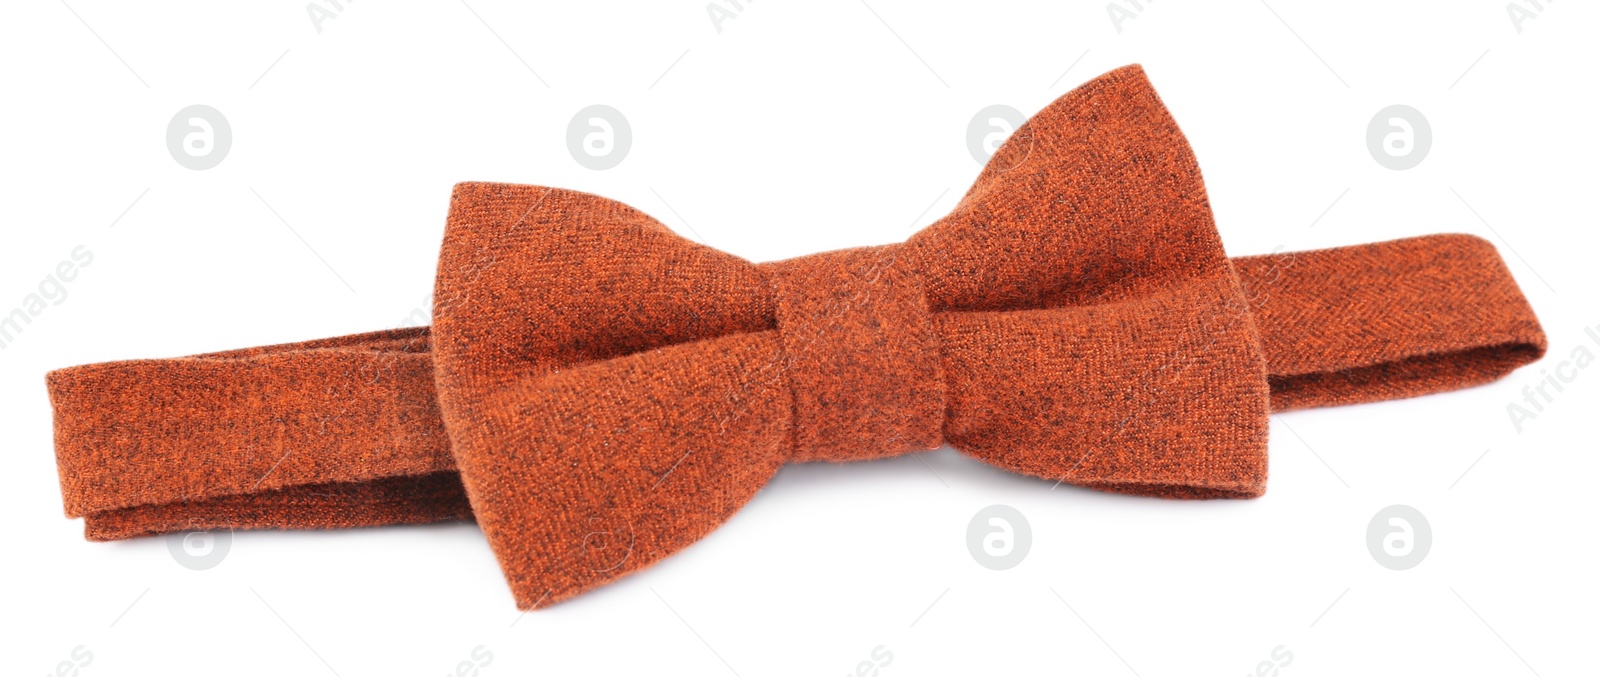 Photo of Stylish orange bow tie isolated on white